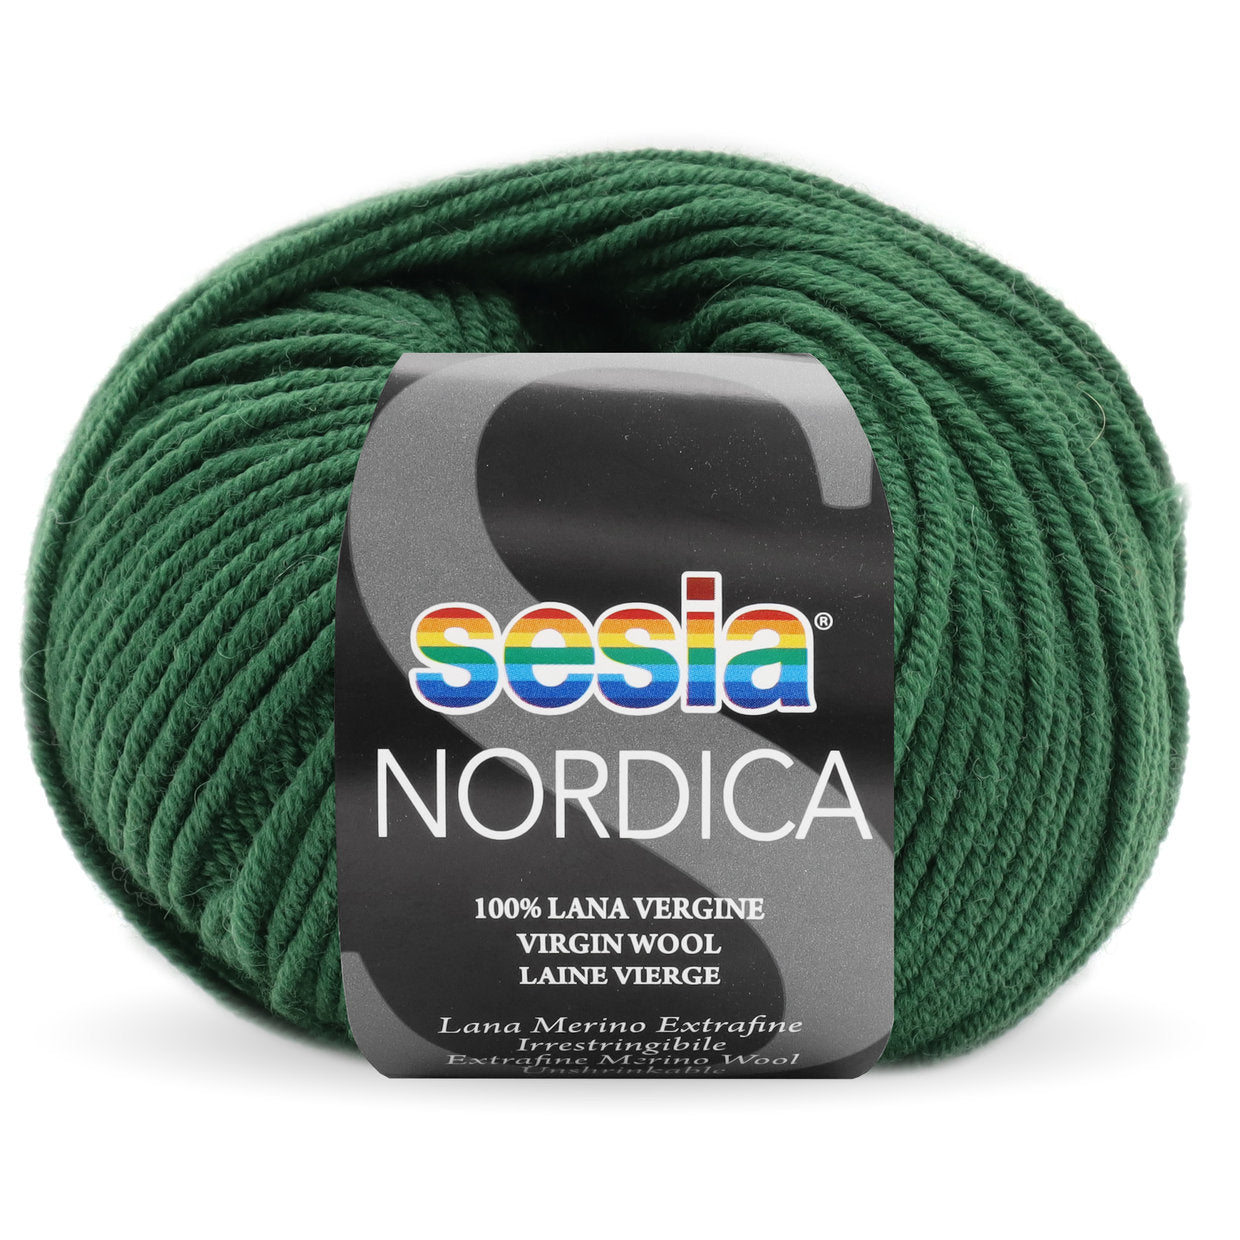 Nordica (Merino extra fine 125m)